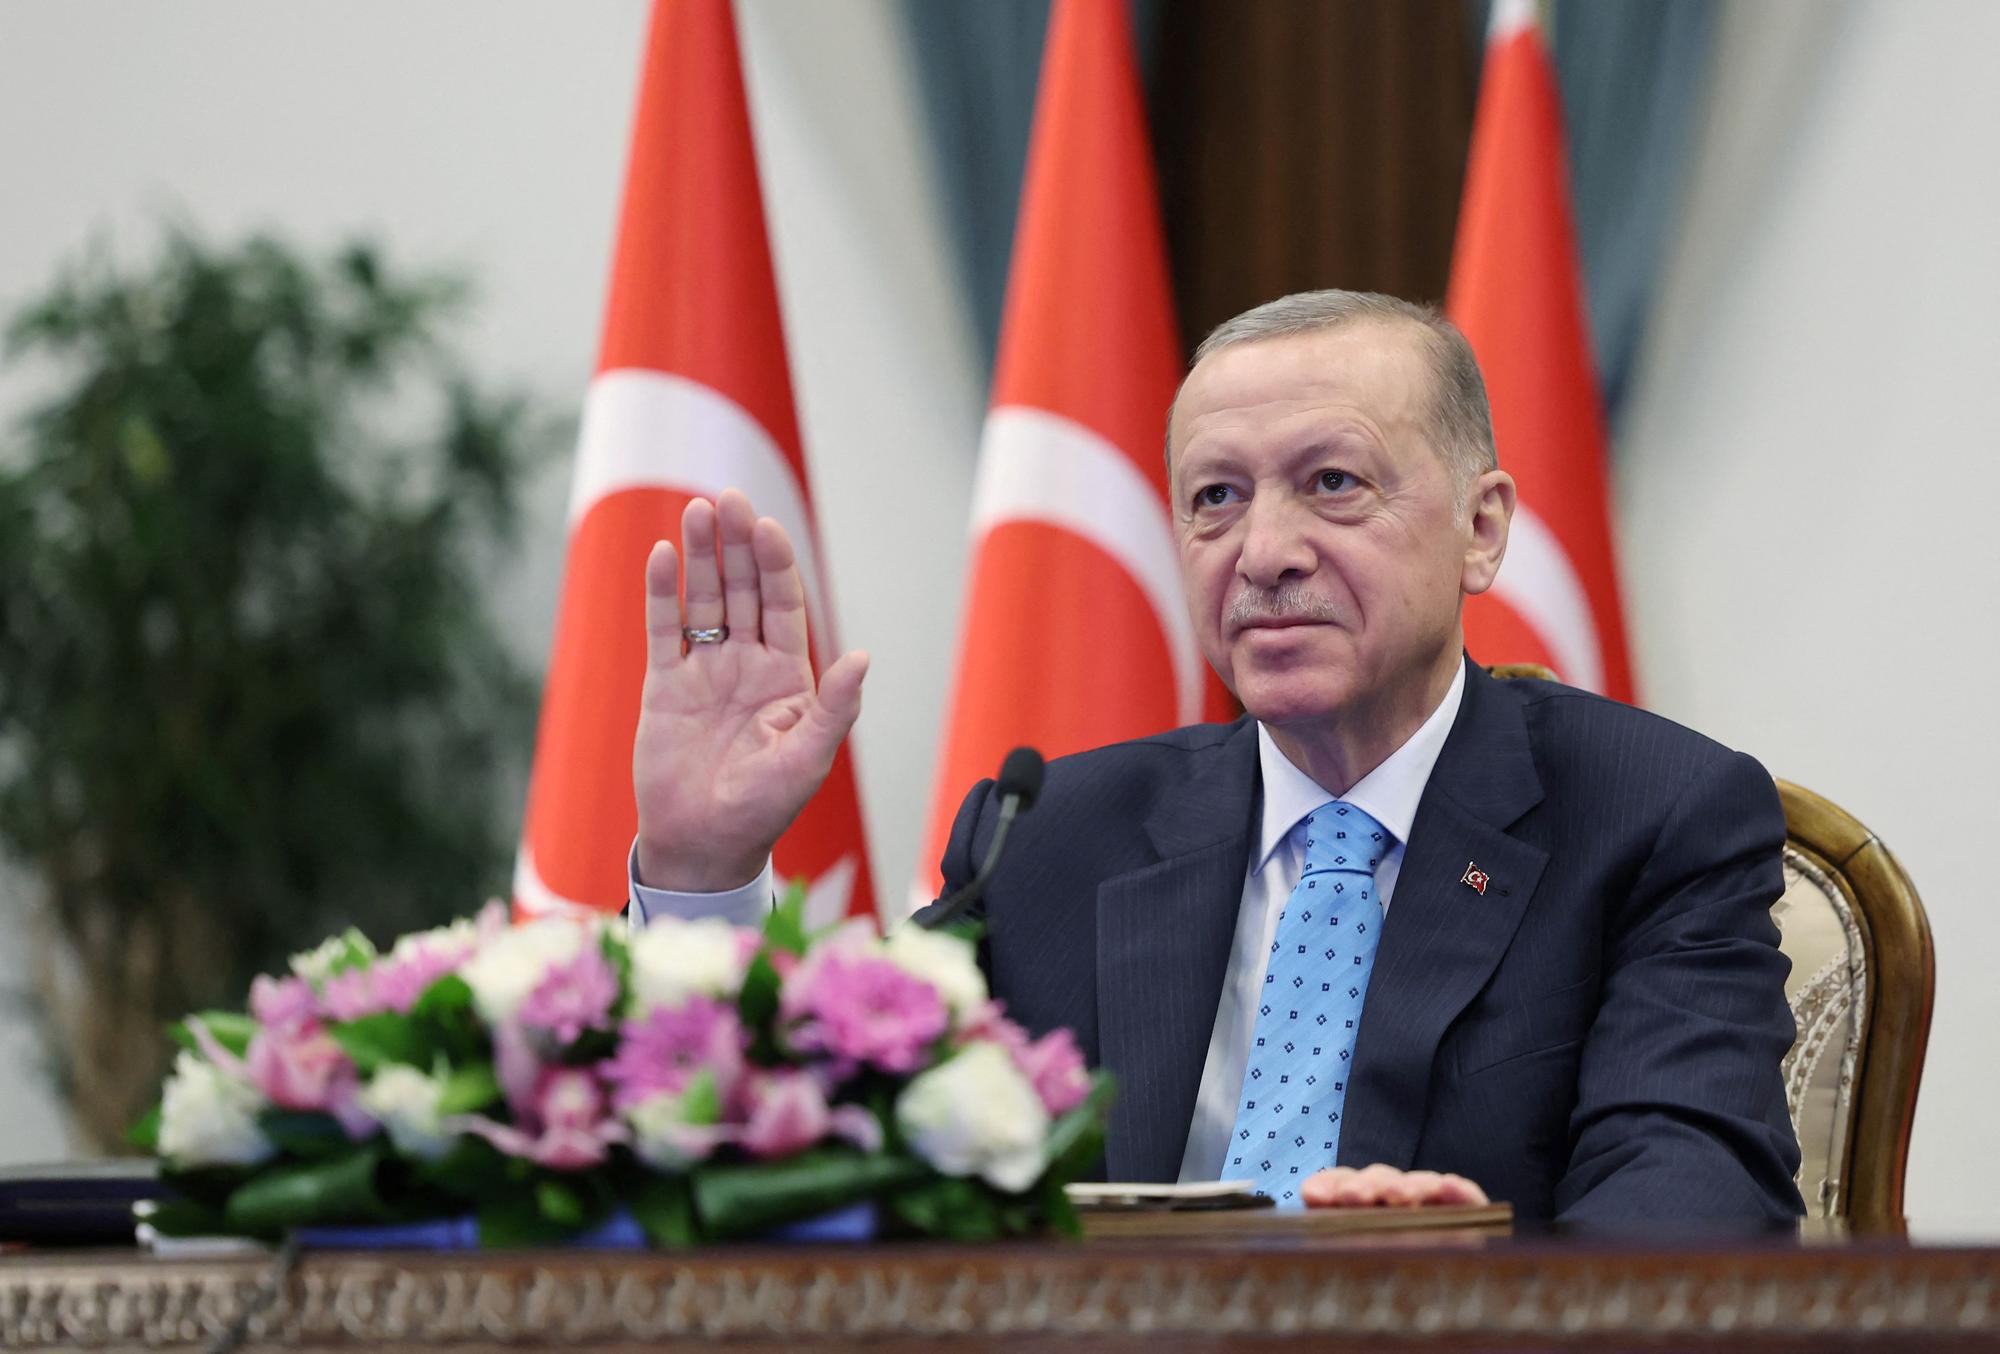 El presidente de Turquía, Recep Tayyip Erdogan, durante la ceremonia de inauguración de la central nuclear de Akkuyu, este jueves en Ankara.